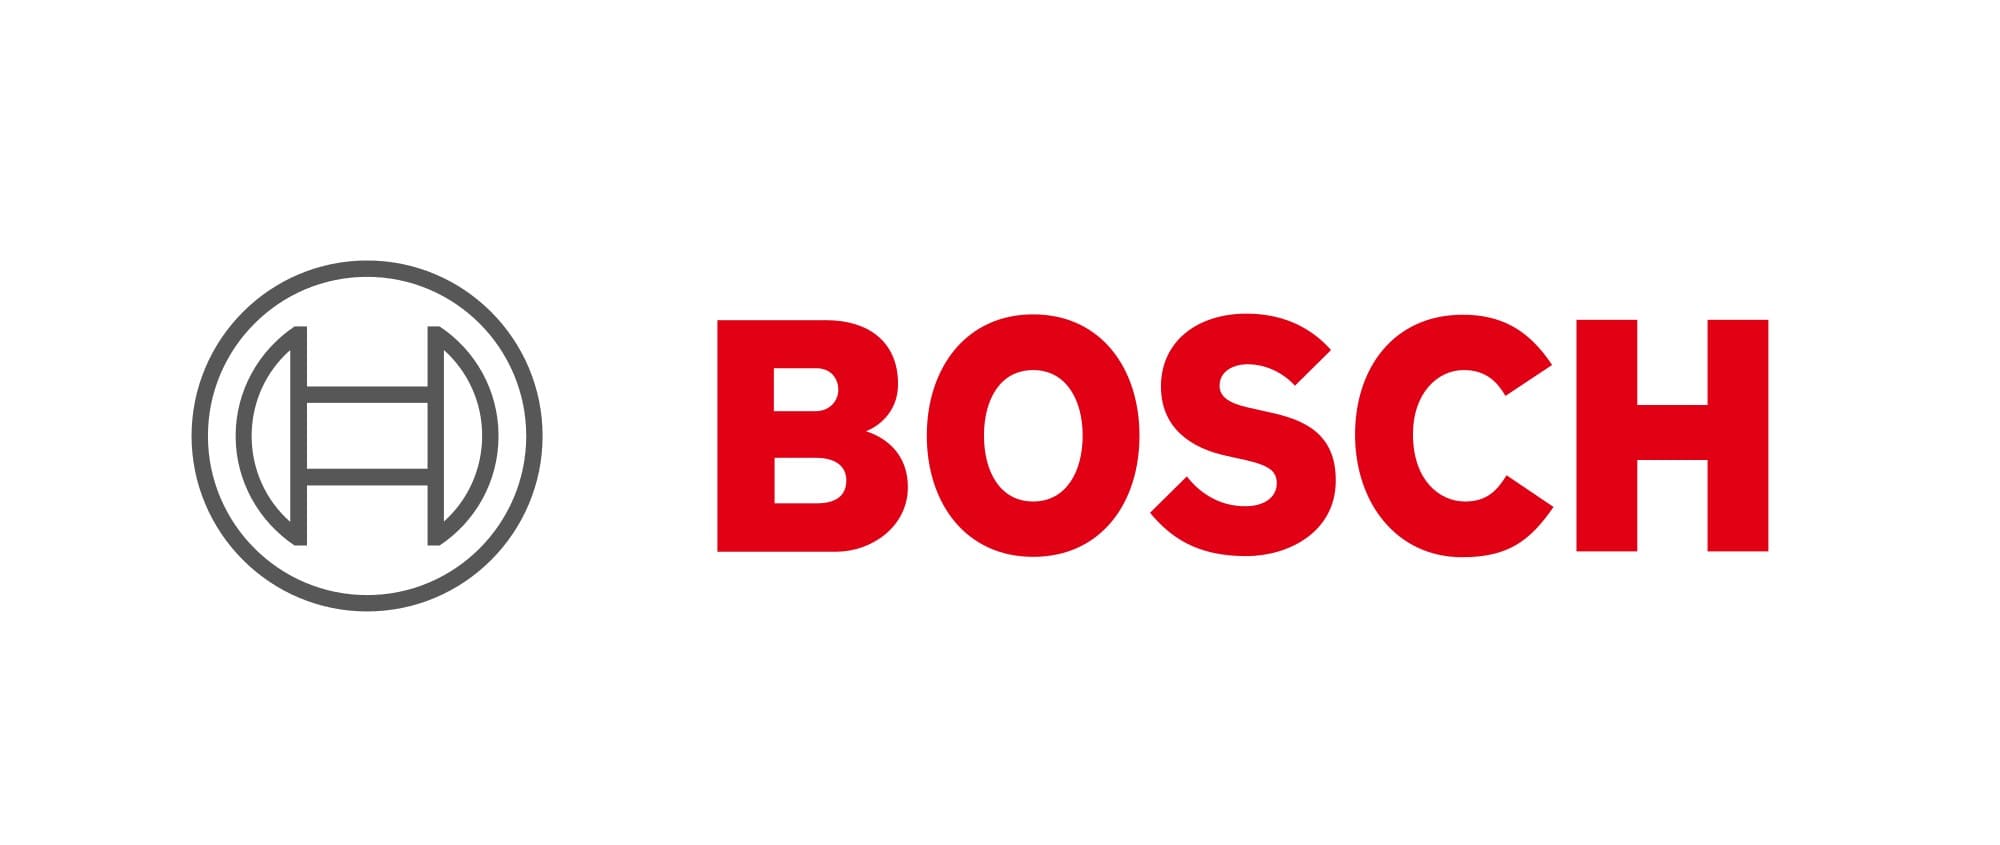 L’équipementier Bosch s’inquiète de la pénurie de puces semi-conductrice